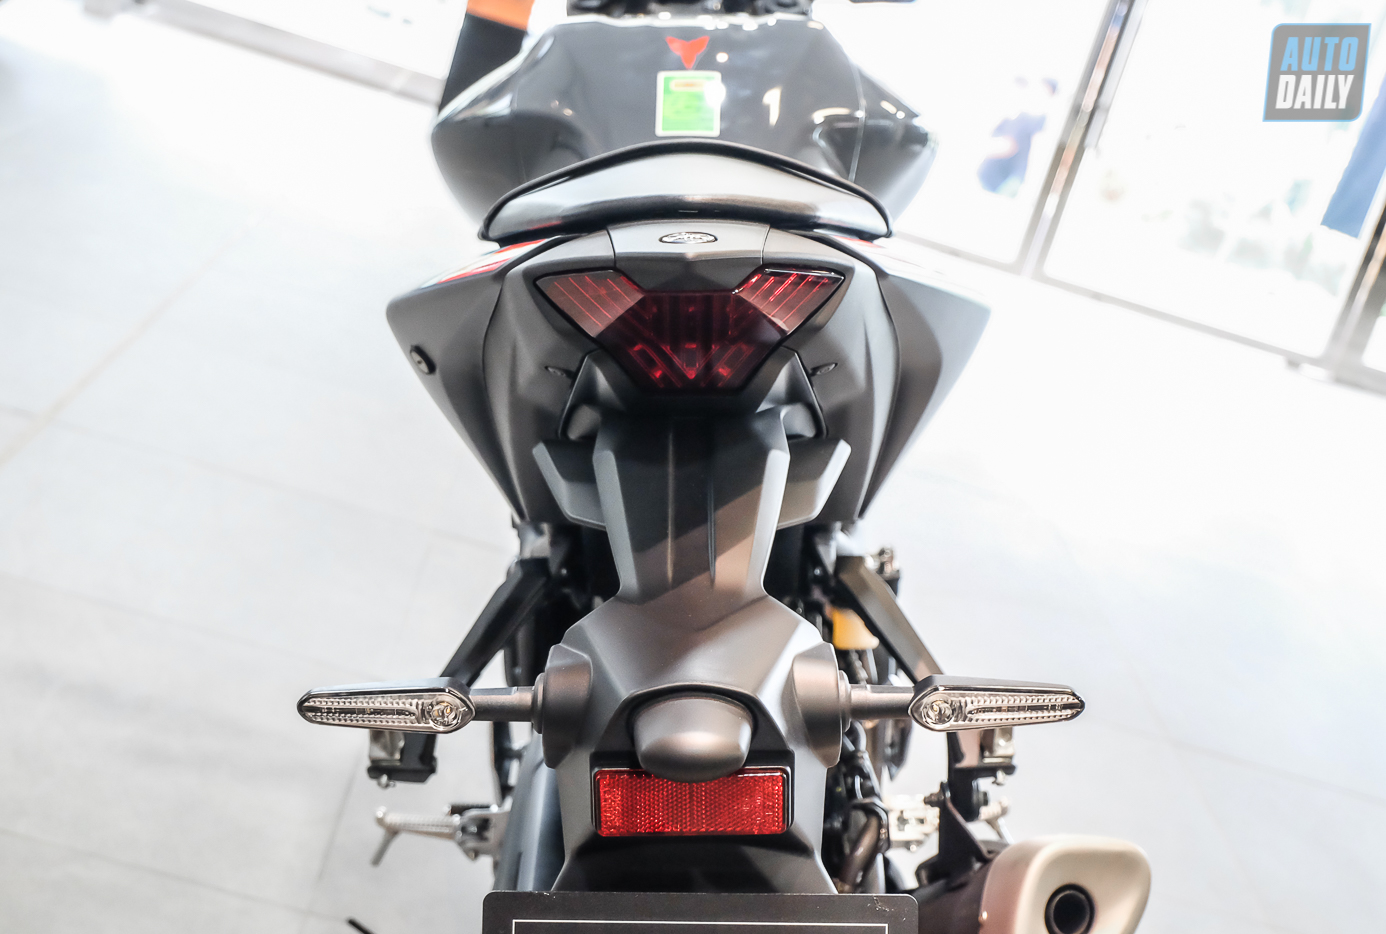 “Kỵ sĩ bóng đêm” Yamaha MT-03 2022 chốt giá từ 129 triệu đồng tại Việt Nam Yamaha MT-03 (8).jpg